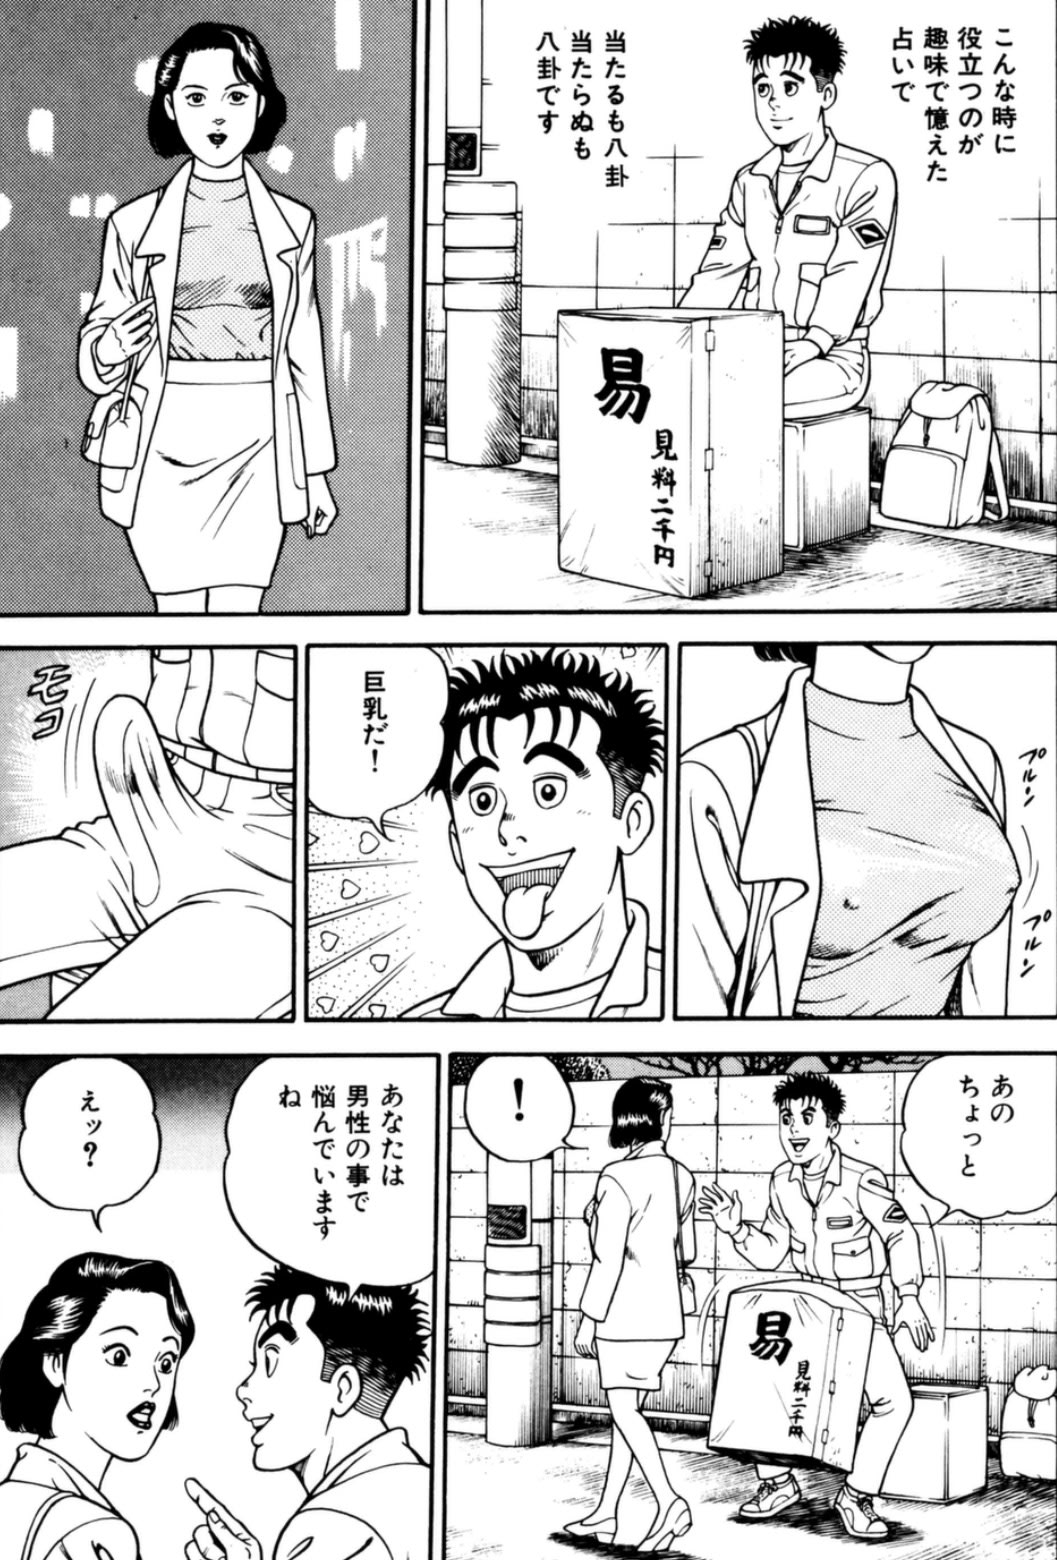 男 日本海 感想 疲れている時に読むと最高のバカエロ漫画 2ページ目 マンバ